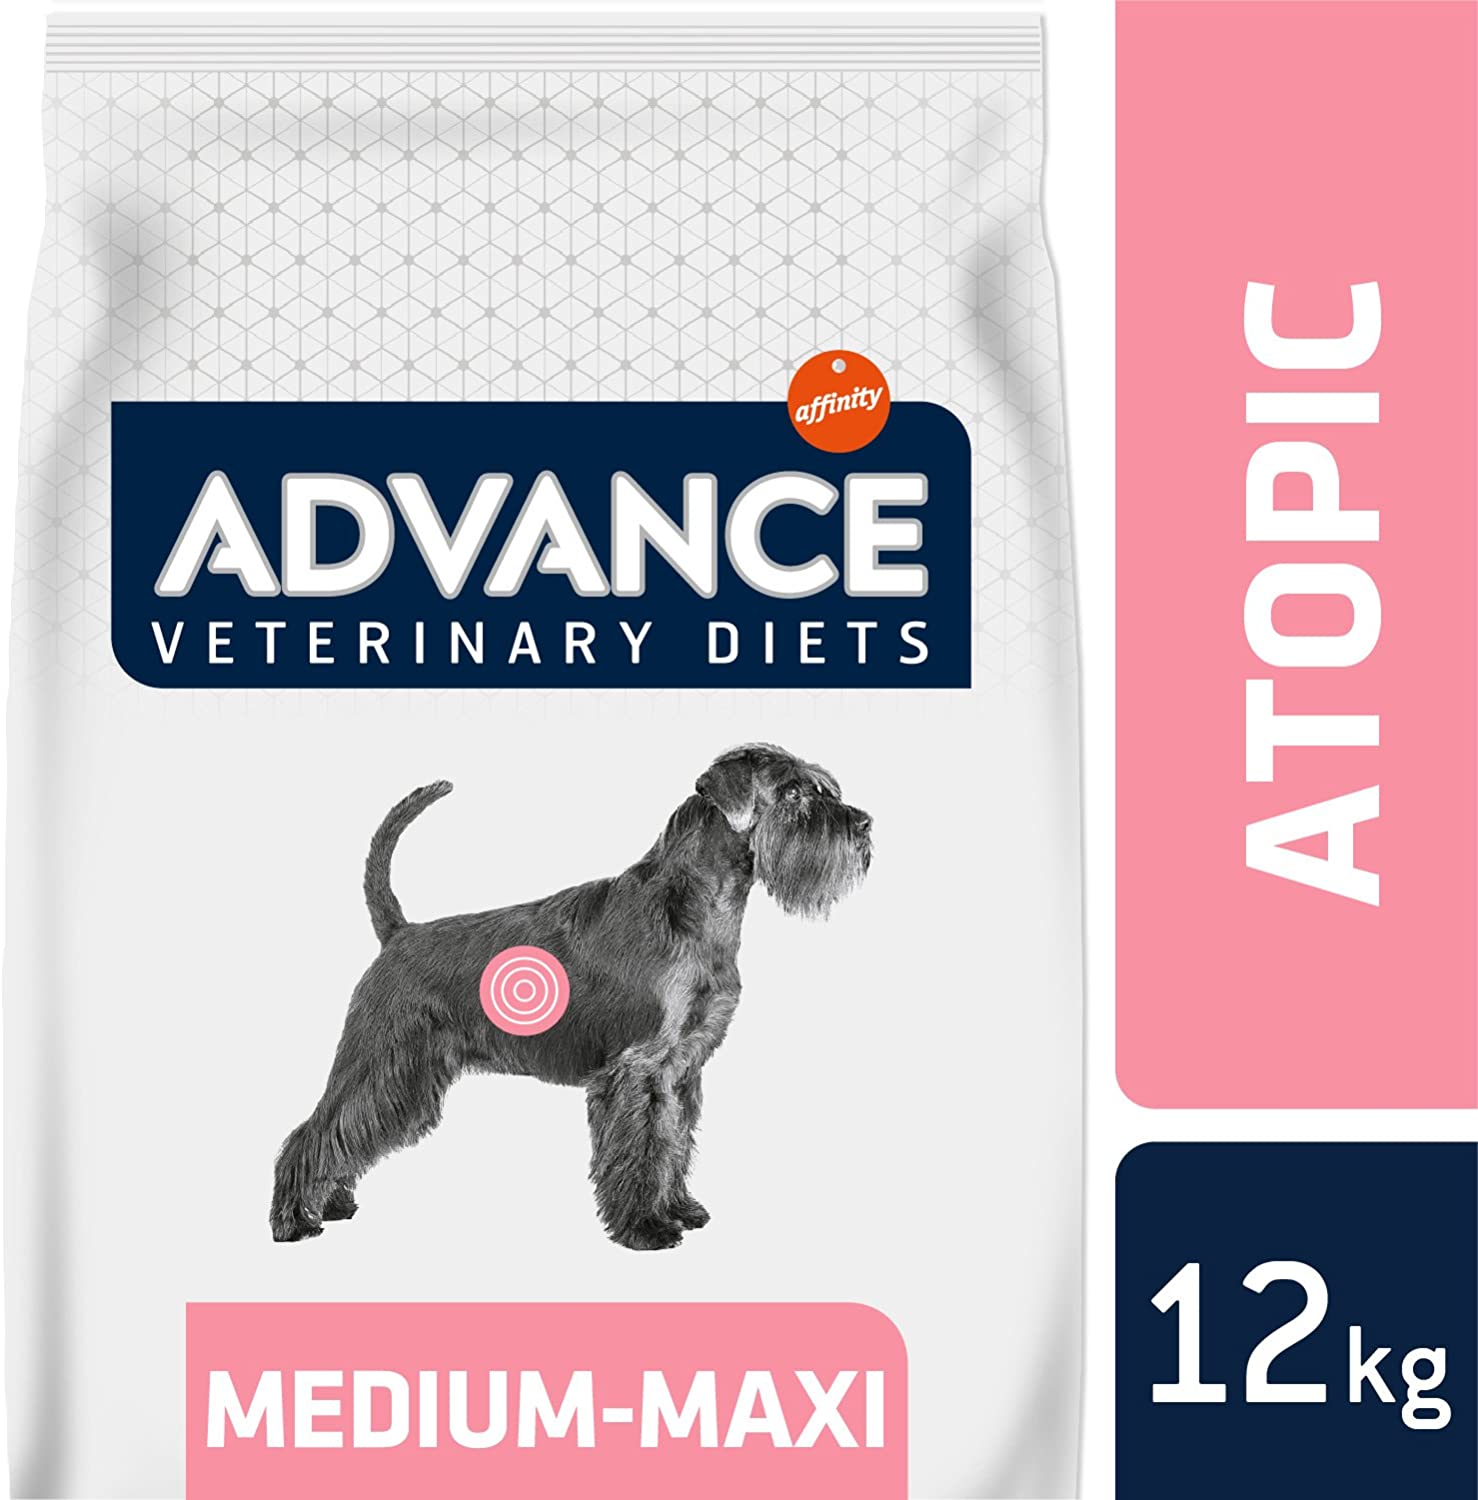  Advance Advance Diets Atopic Care Pienso para Perro con Trucha - 12000 gr 